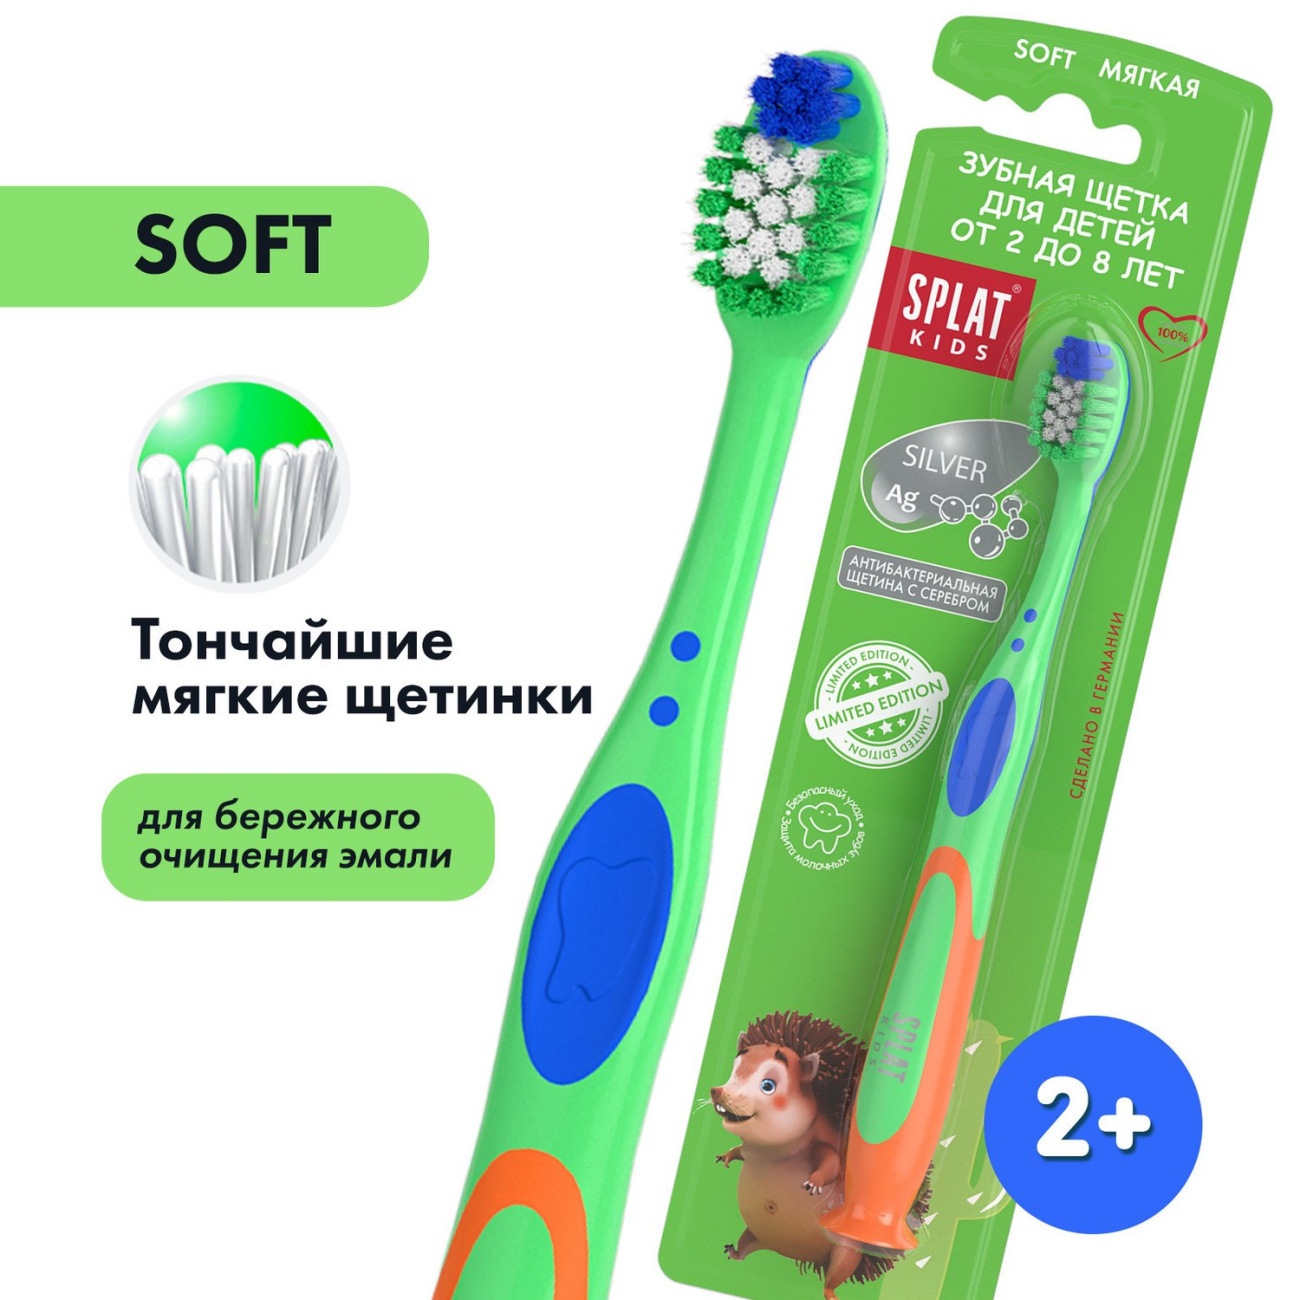 Зубная щетка SPLAT Kids 1шт для детей от 2 до 8 лет салатовая 4052500102568/салатовая